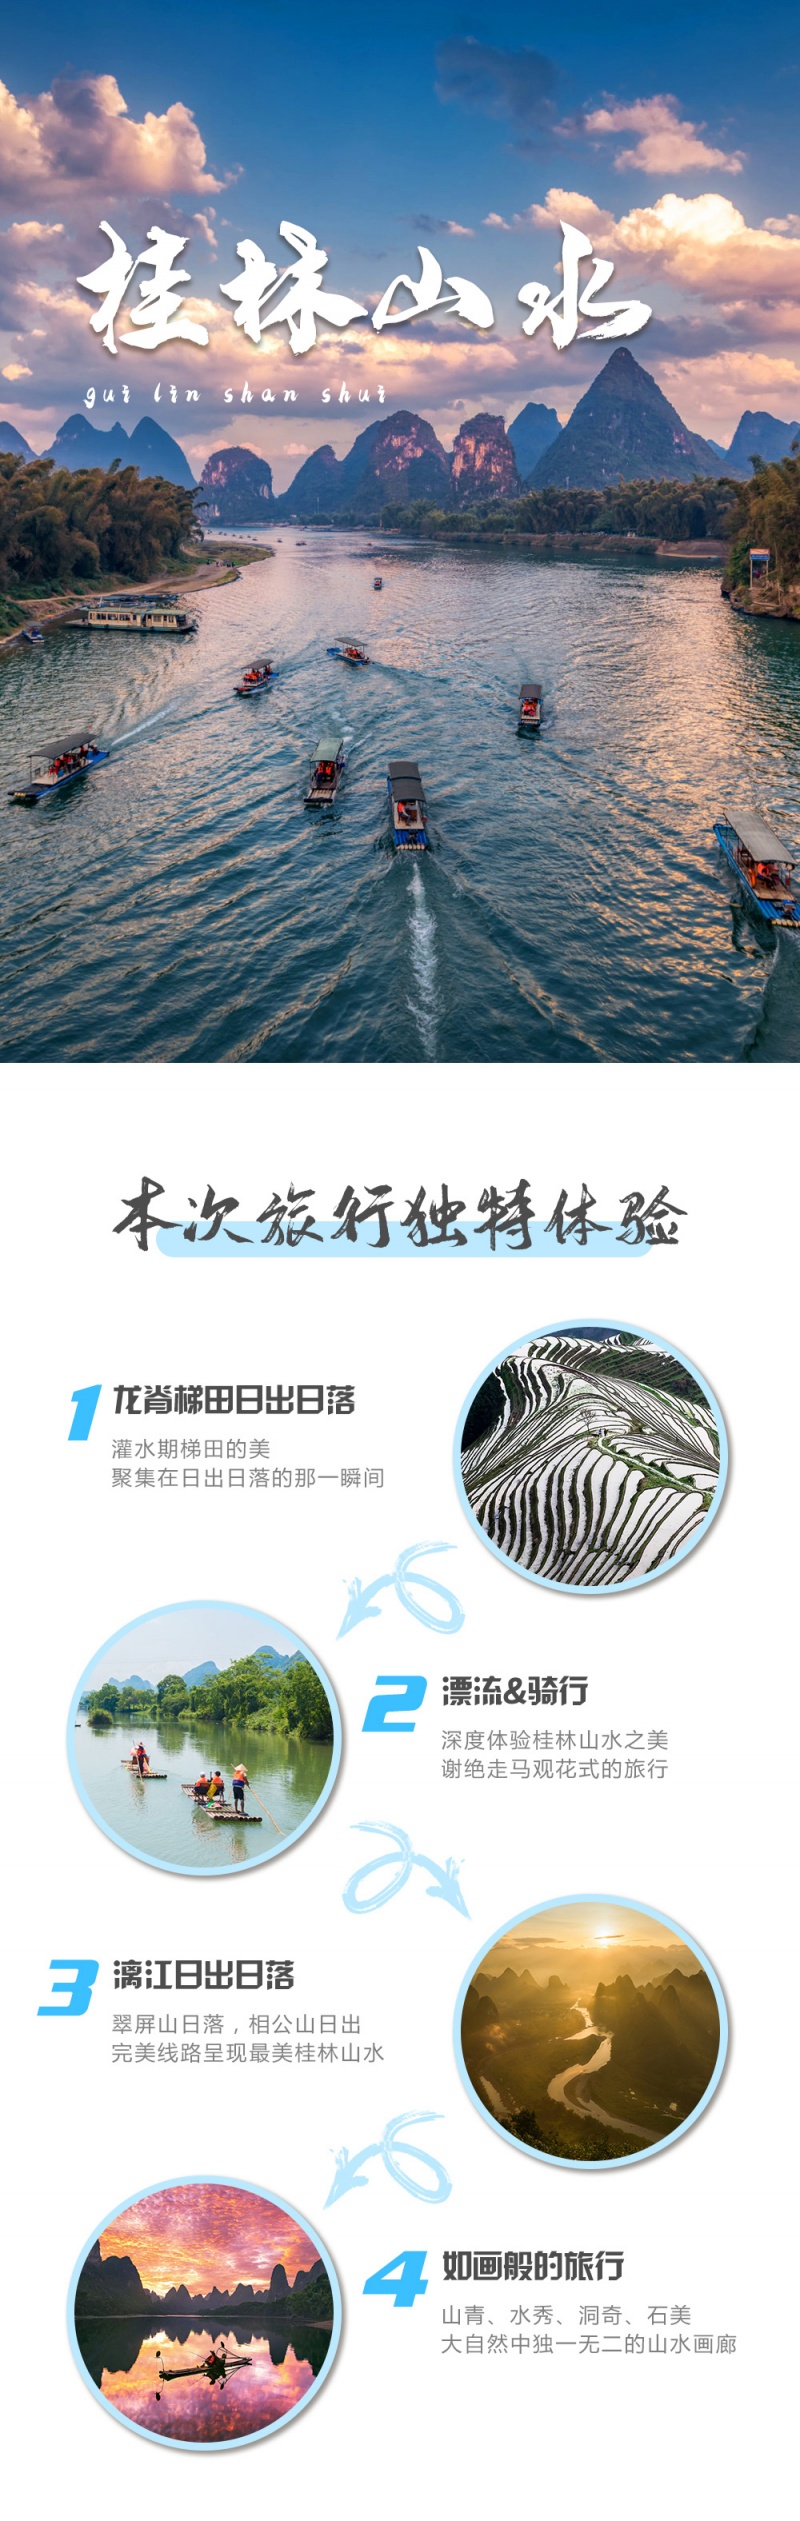 桂林山水-亮点图-统一模板2-1